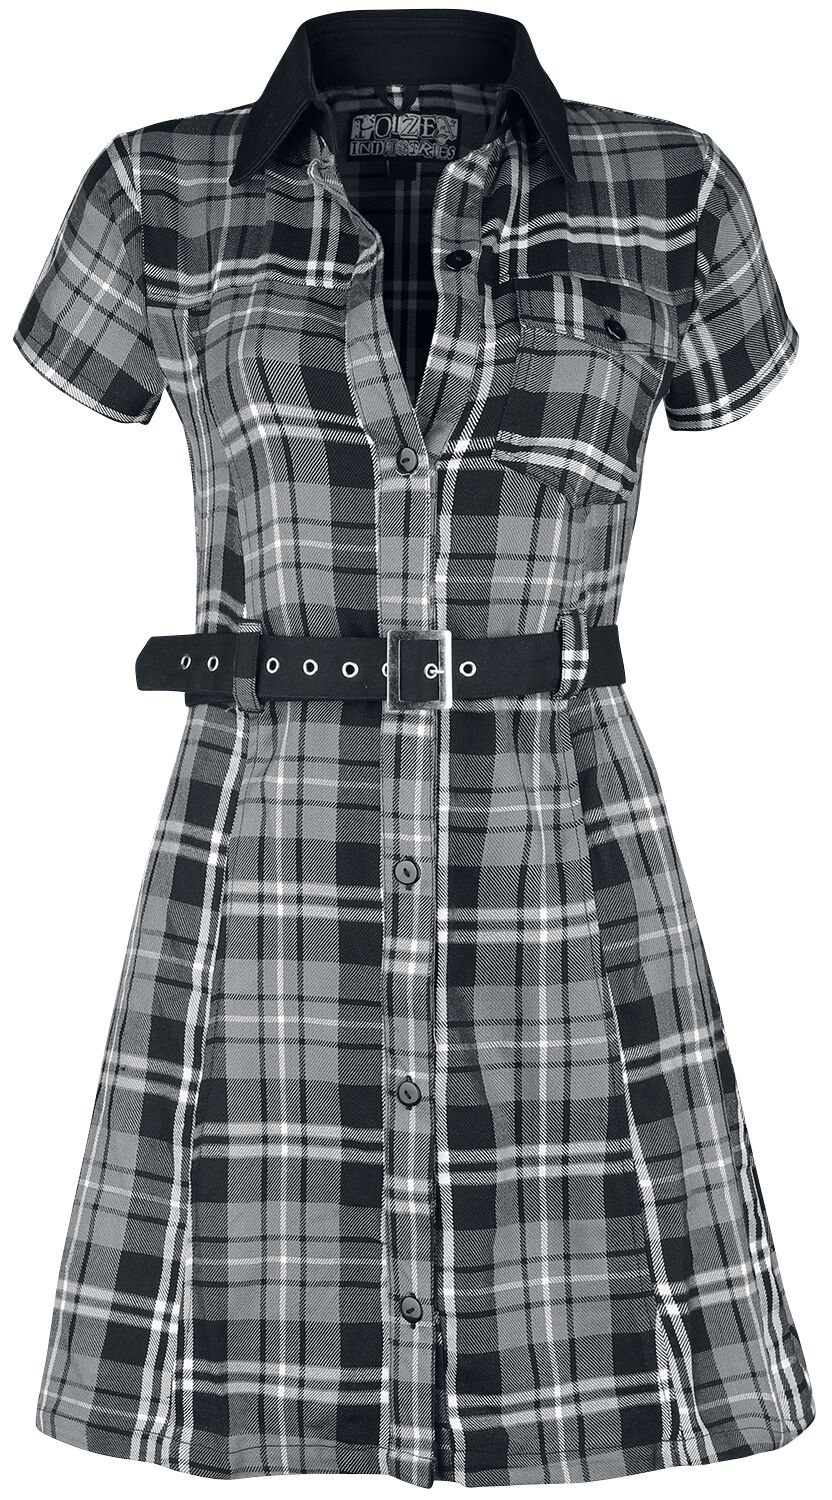 Robe courte de Poizen Industries - Robe Adelaide - XS à XXL - pour Femme - noir/gris/blanc